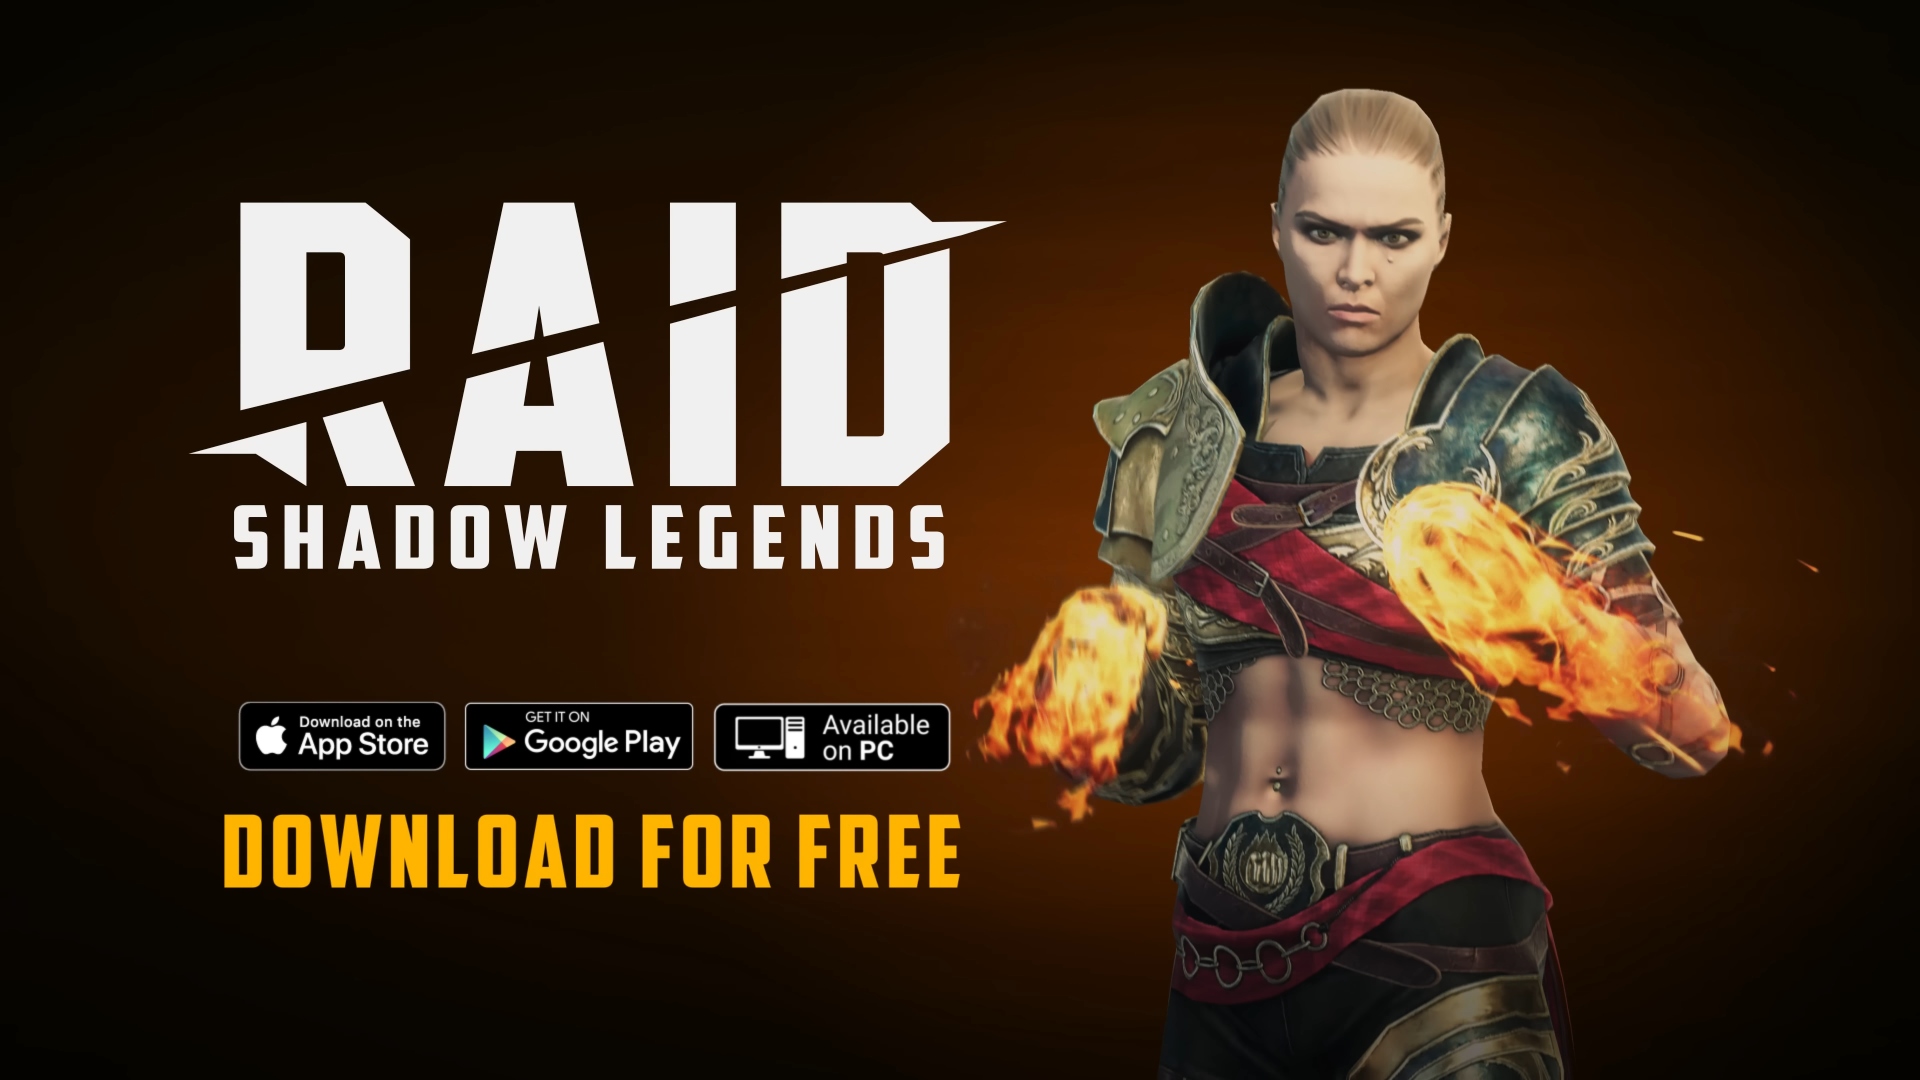 Raid: Shadow Legends Promo mit dem Logo des Spiels, einem Bild von Ronda Rousey, kleinen Bildern, die darauf hinweisen, dass es auf Android, iPhone und PC spielbar ist.  Darunter steht 